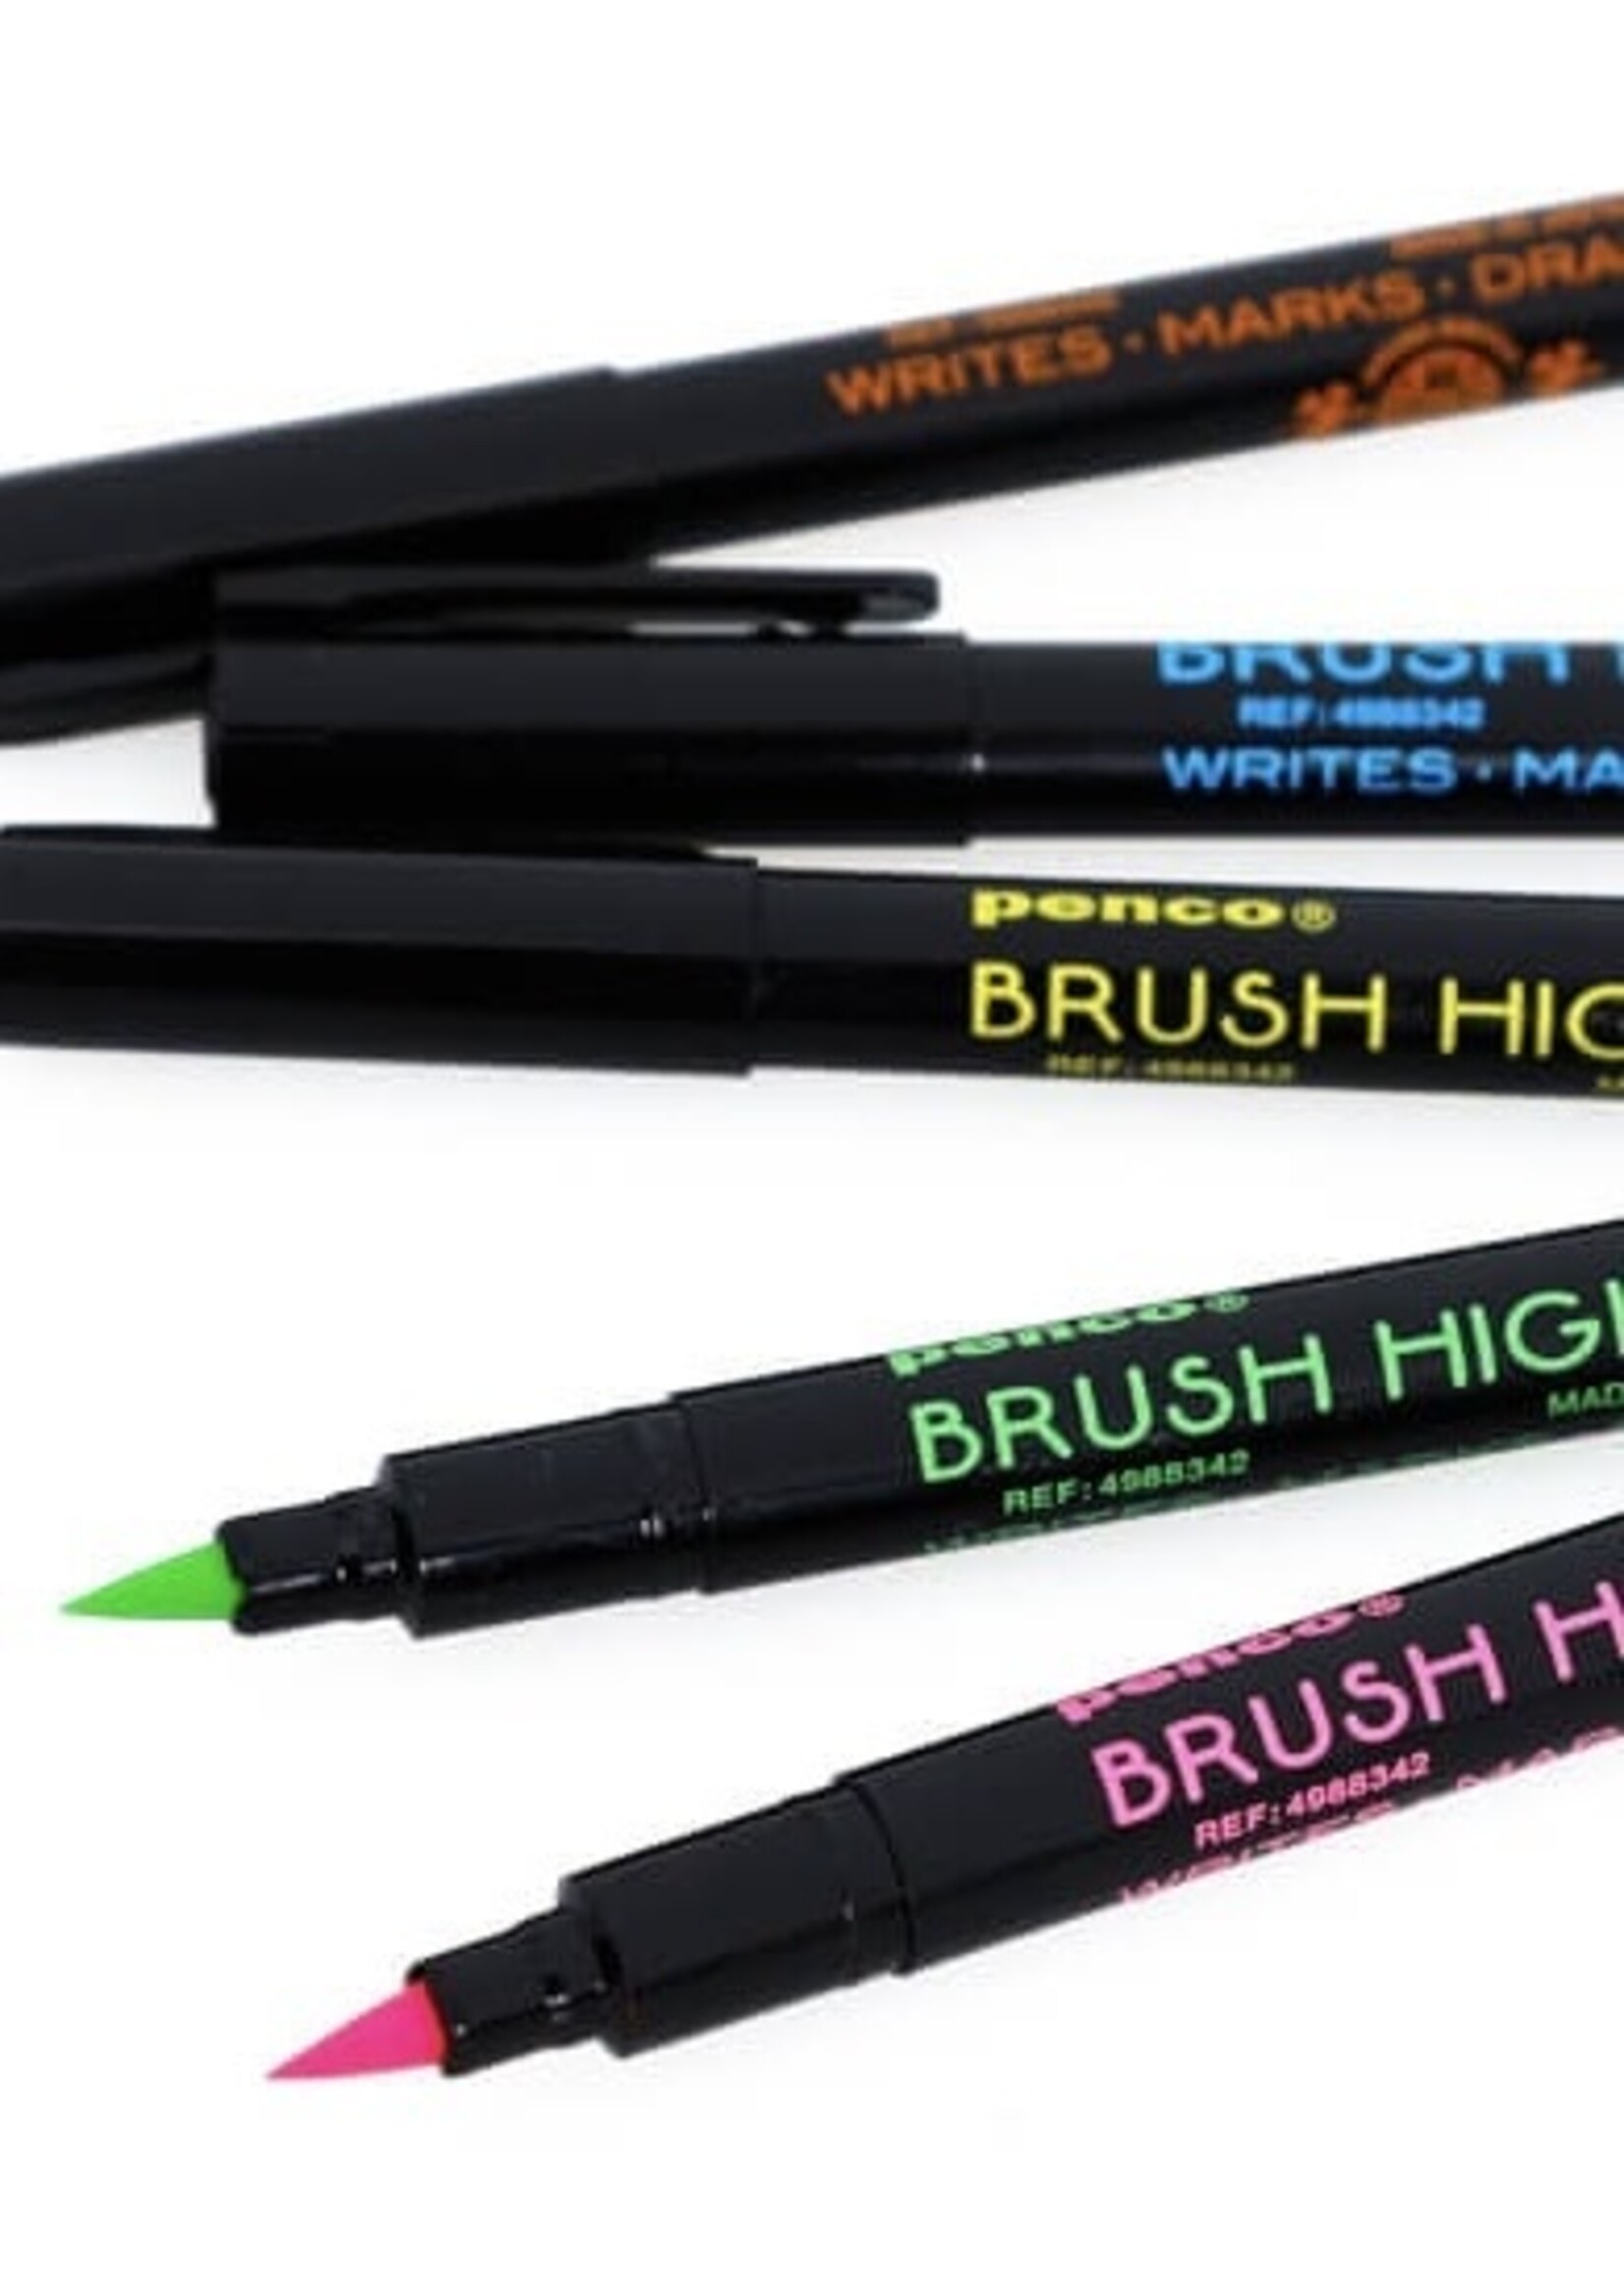 Hightide Stylos "Highlighter Brush" by Penco